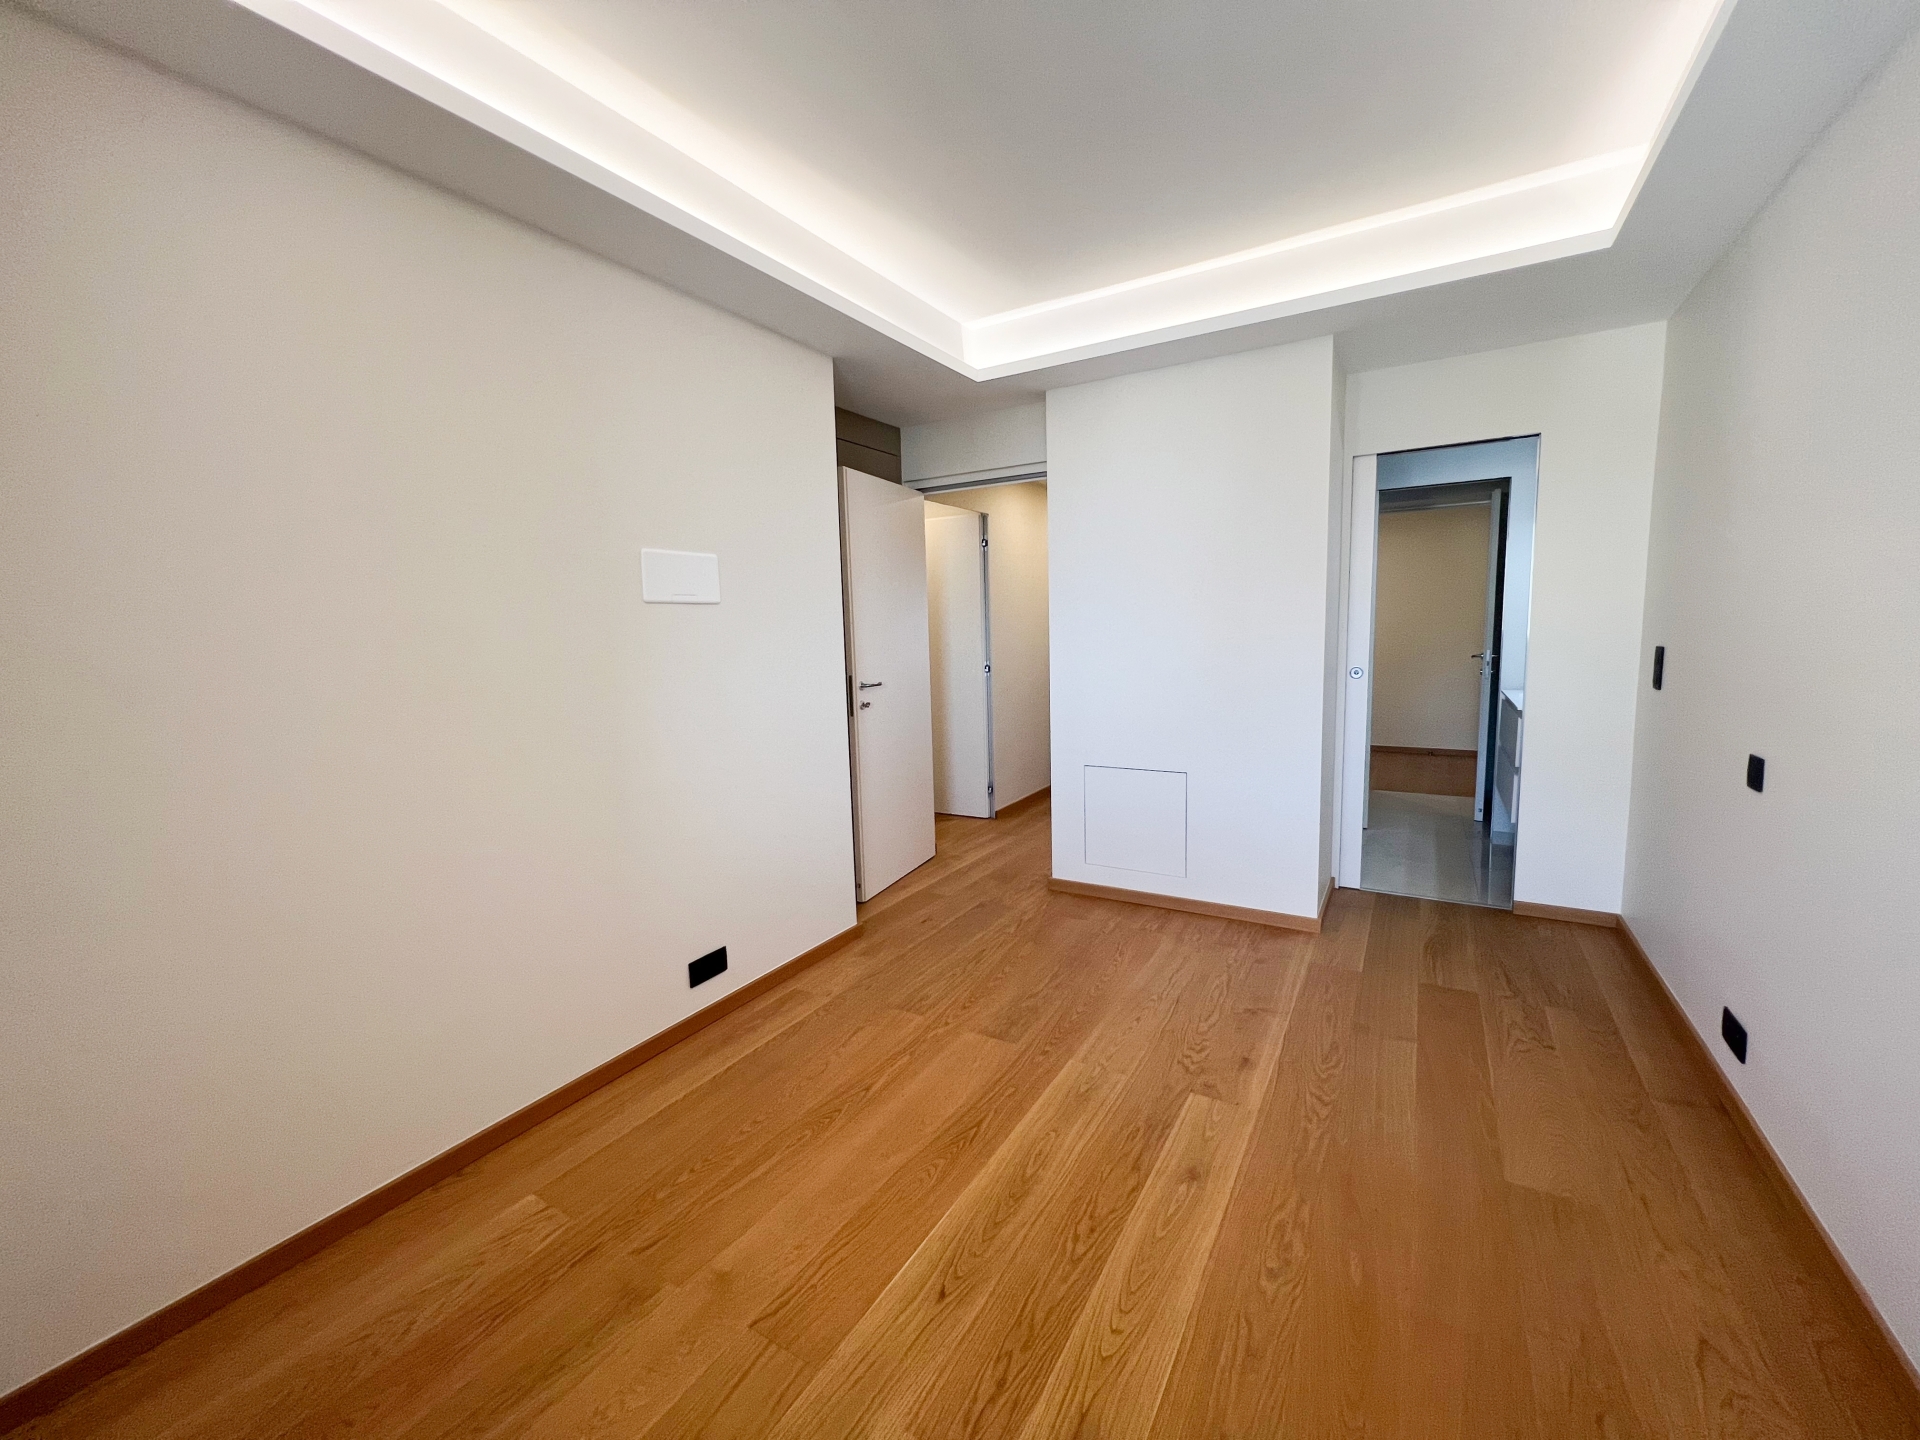 Dotta Appartement de 3 pieces a vendre - PARK PALACE - Monte-Carlo - Monaco - img4